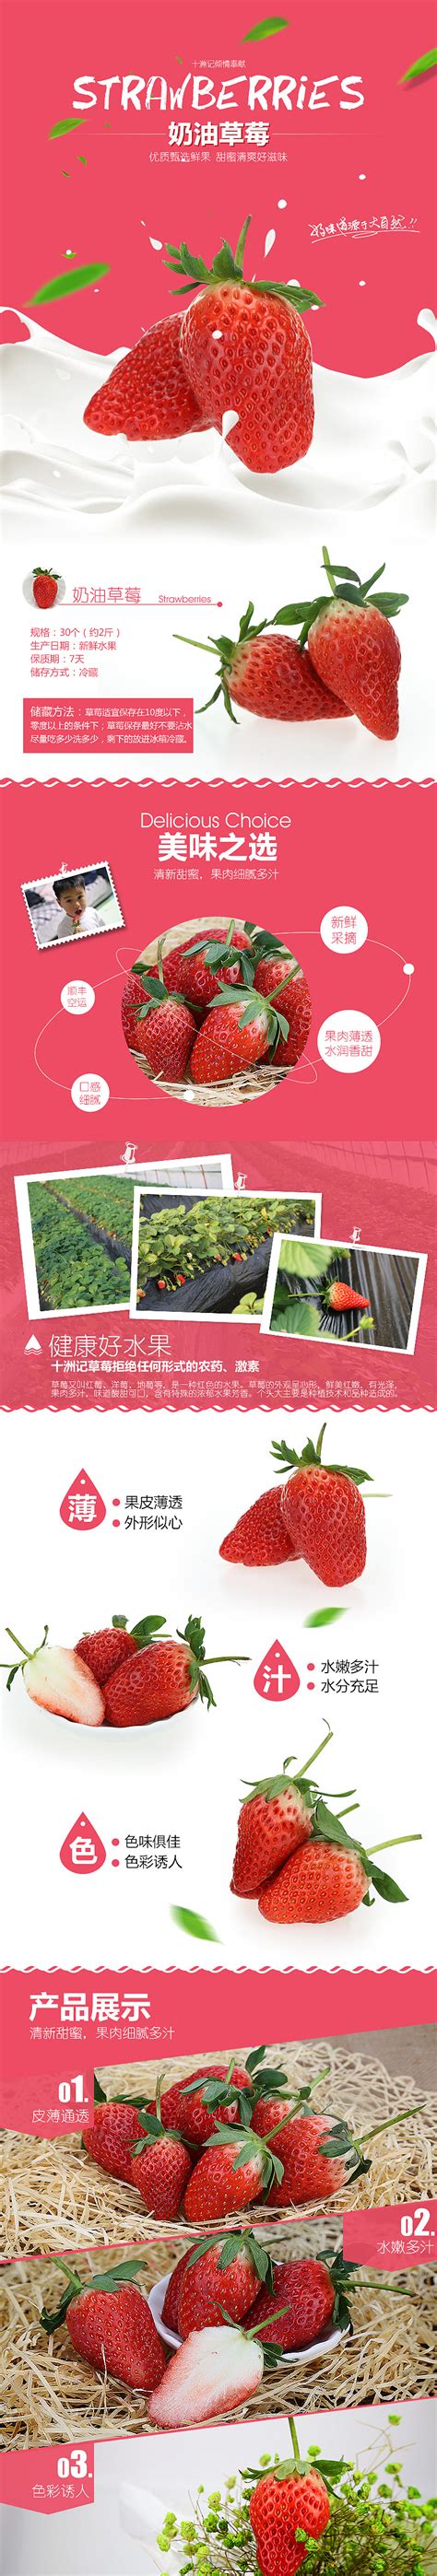 首届国际草莓品牌大会在南京溧水隆重举行_三农_资讯_种业商务网